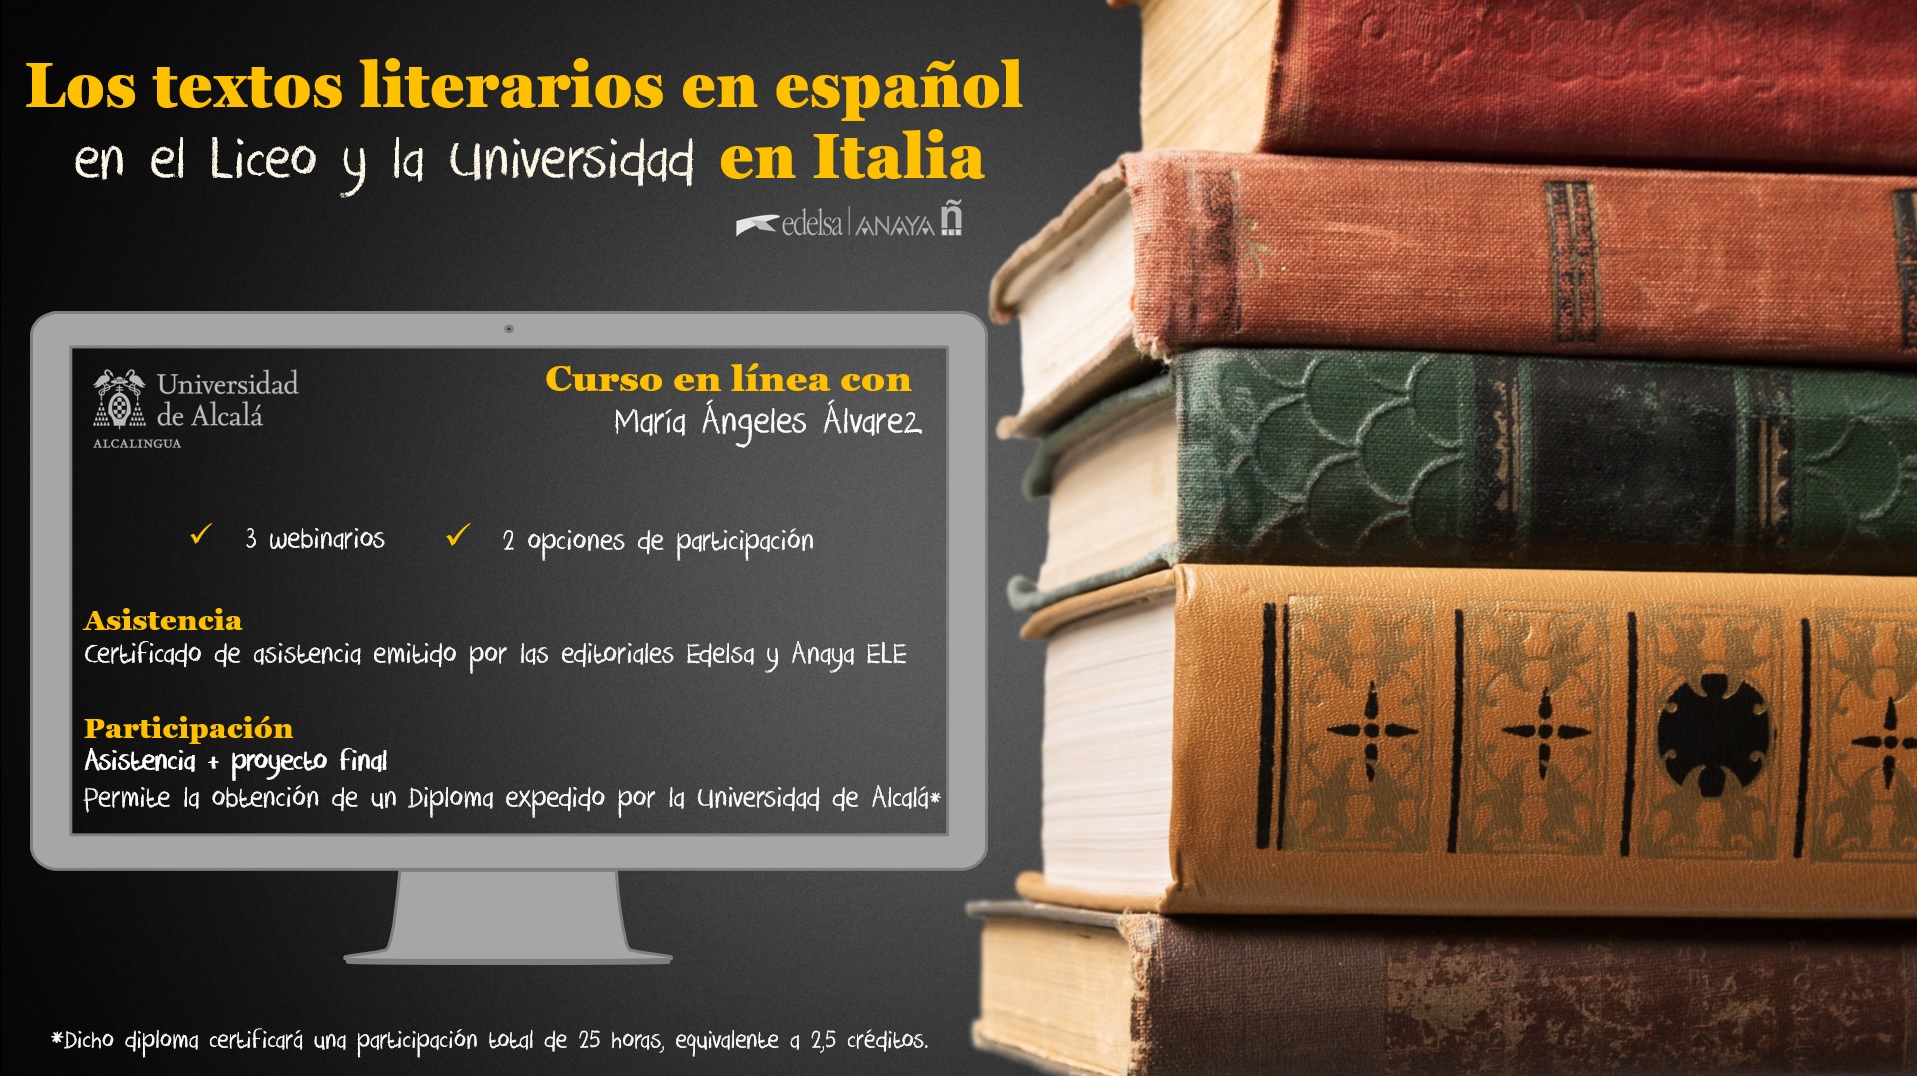 Curso: Los textos literarios en español (en el Liceo y la Universidad) en Italia